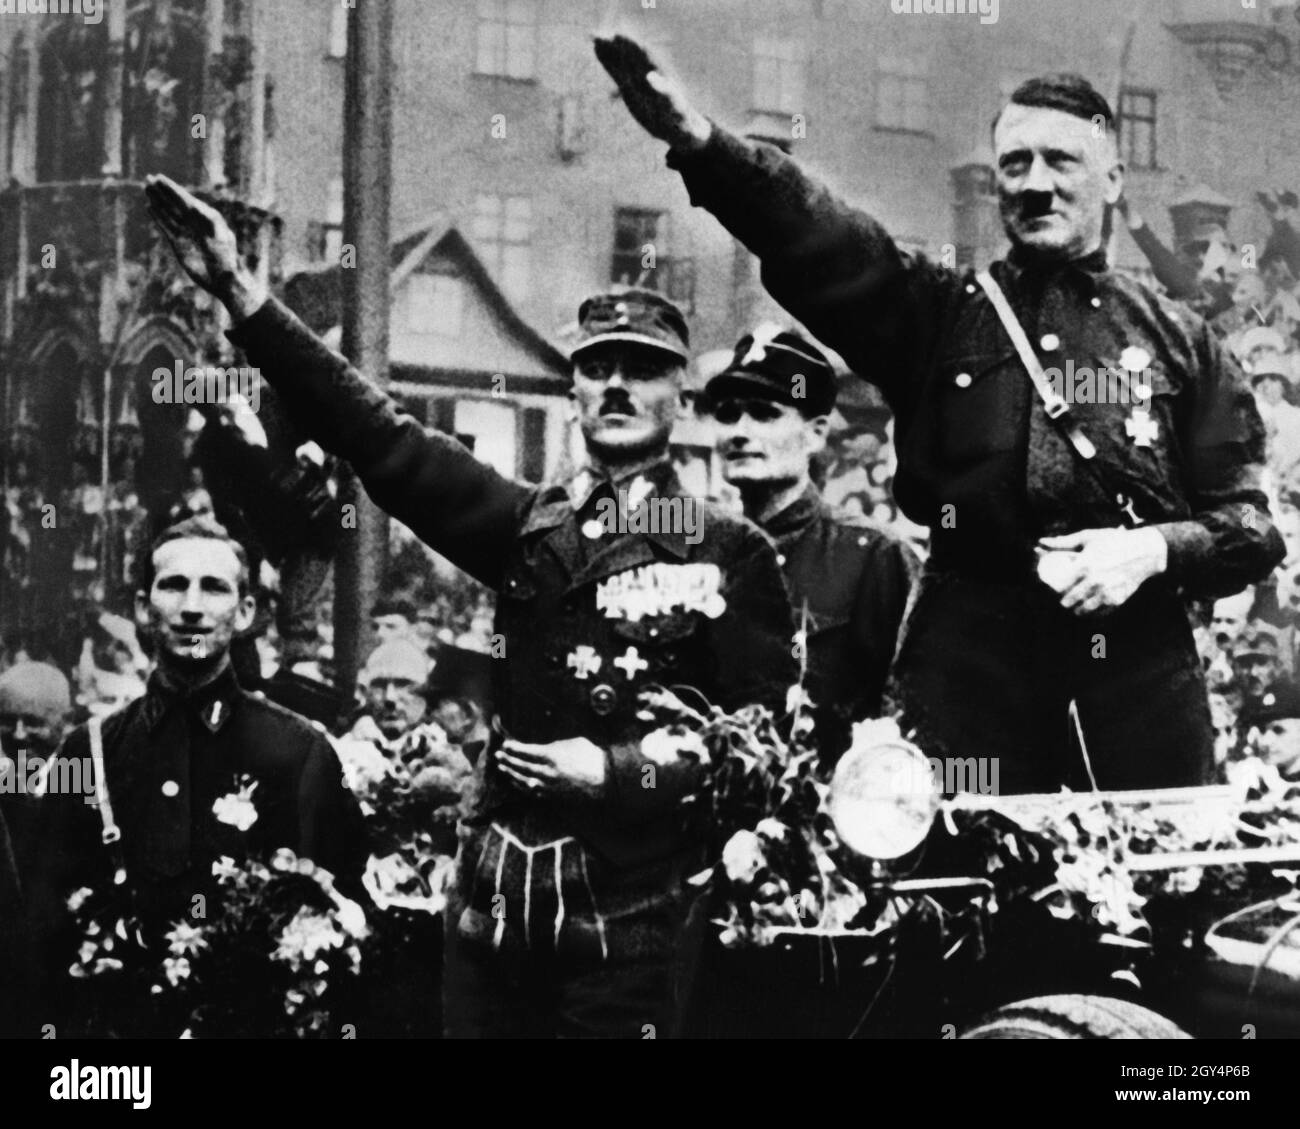 Hitler, Hess und Pfeffer begrüßen die Menge in Nürnberg mit dem Hitlergrüße aus dem Auto, das sich anlässlich des Reichsparteitags der NSDAP am schönen Brunnen auf dem Hauptmarkt versammelt hat. Hitler trägt die Parteiuniform wie üblich auf dem Reichsparteitag. [Automatisierte Übersetzung] Stockfoto